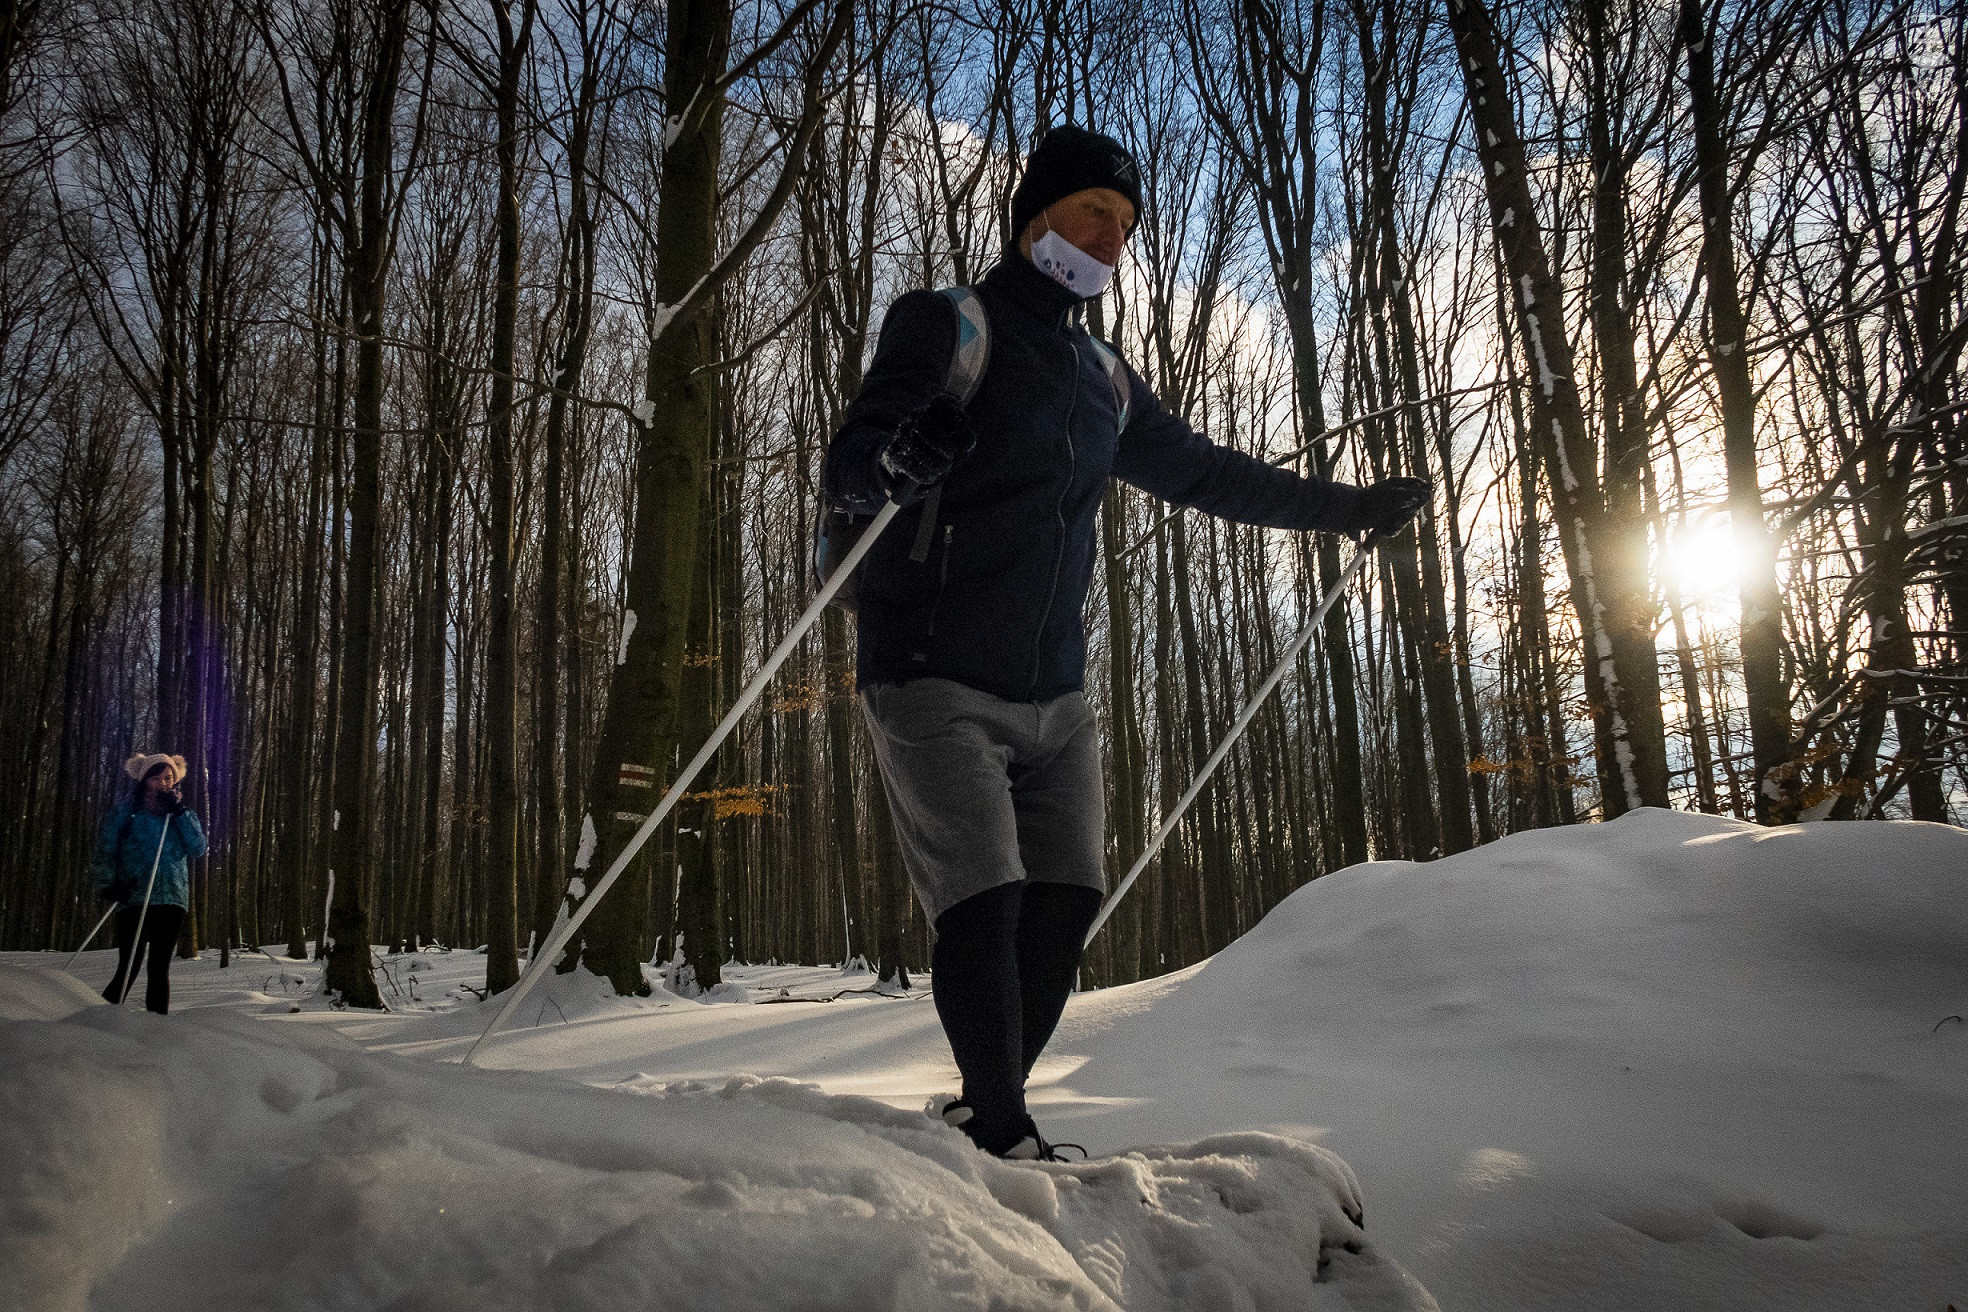 "Bežecké lyžovanie je momentálnej situácii jeden z veľmi mála zimných športov, ktoré sa dajú vykonávať s úsmevom na tvári a bez veľkého ohrozenia zdravia”, hovorí tréner a bývalý reprezentant Štefan Oravec